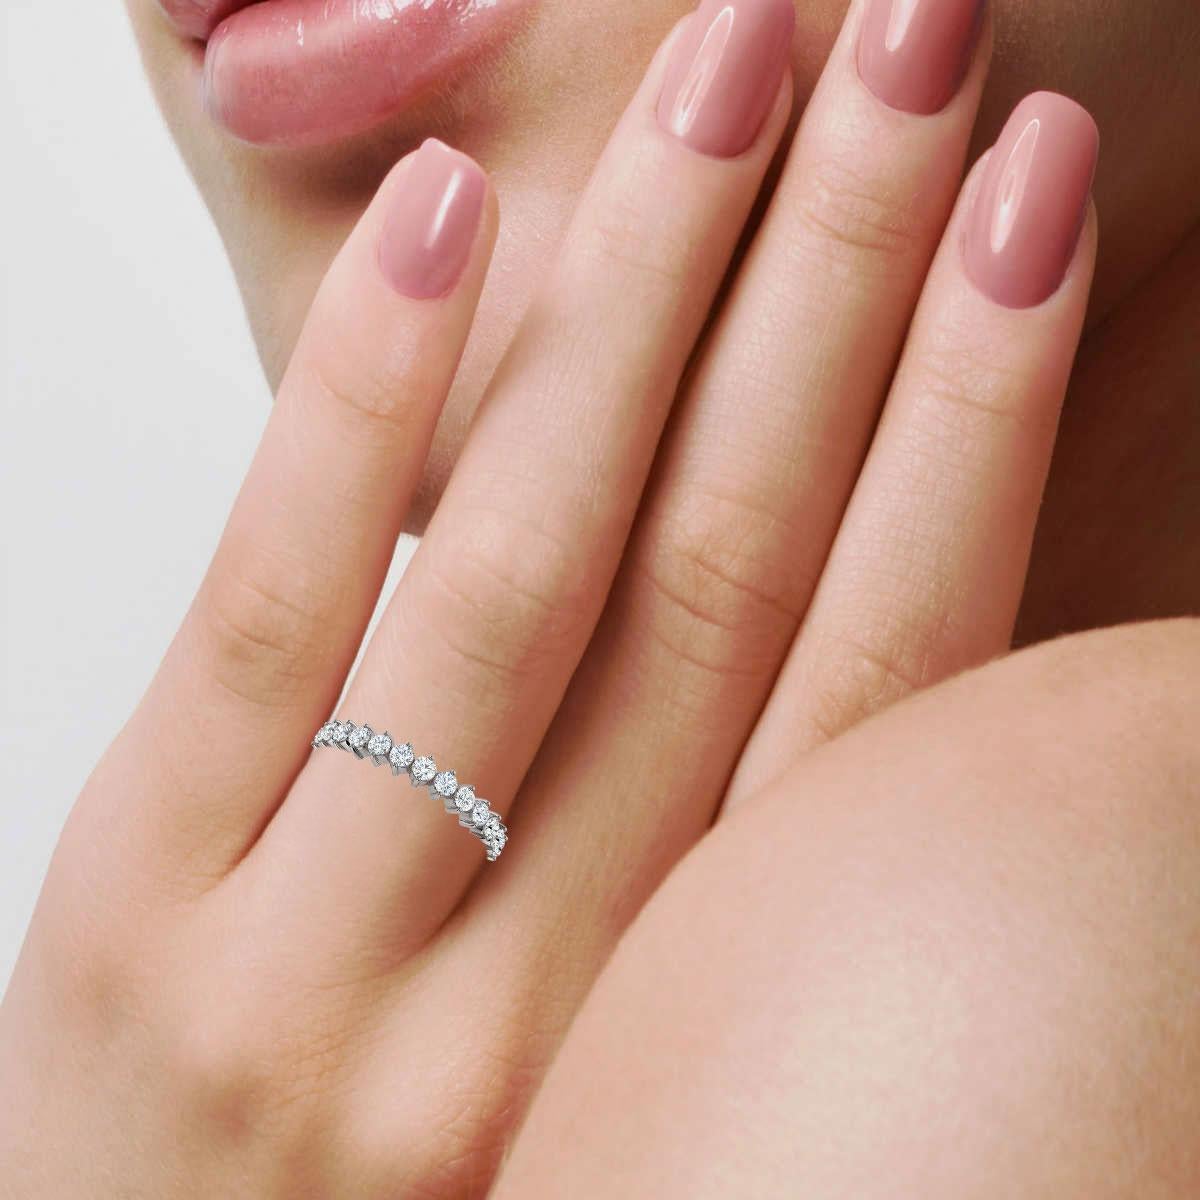 narins beauty ring